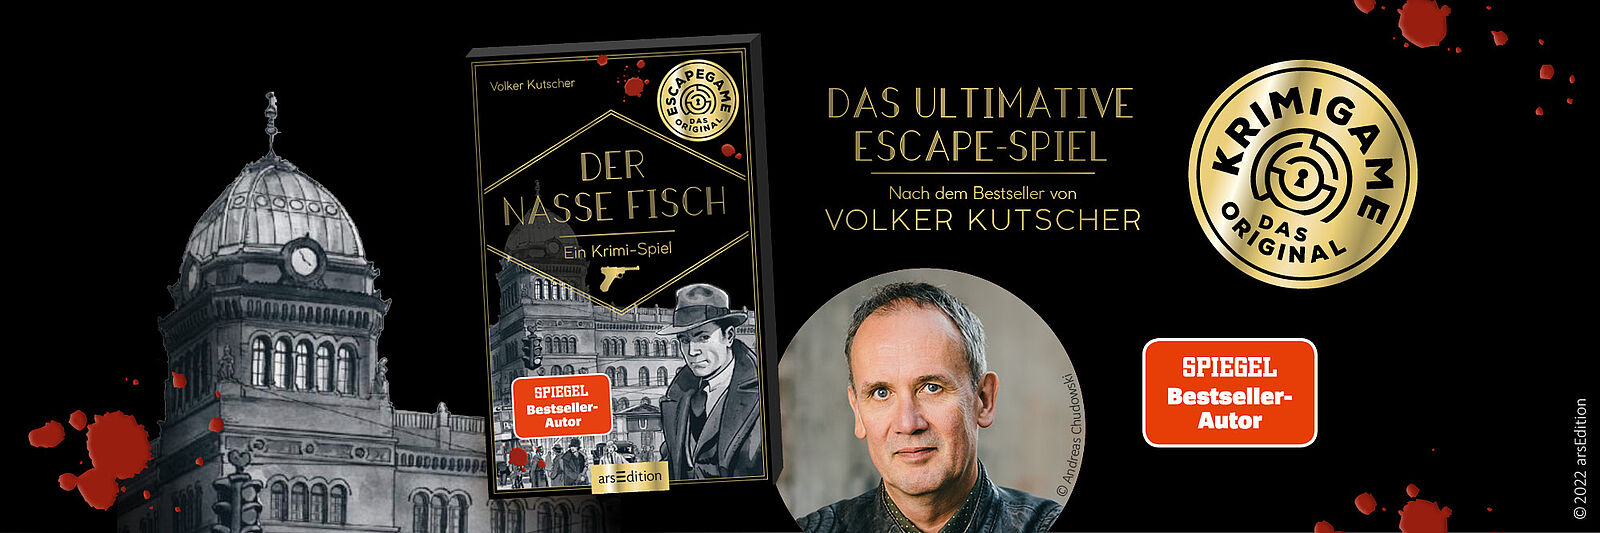 Für alle Fans von Babylon Berlin: das Escape-Spiel nach dem Bestseller von Volker Kutscher!